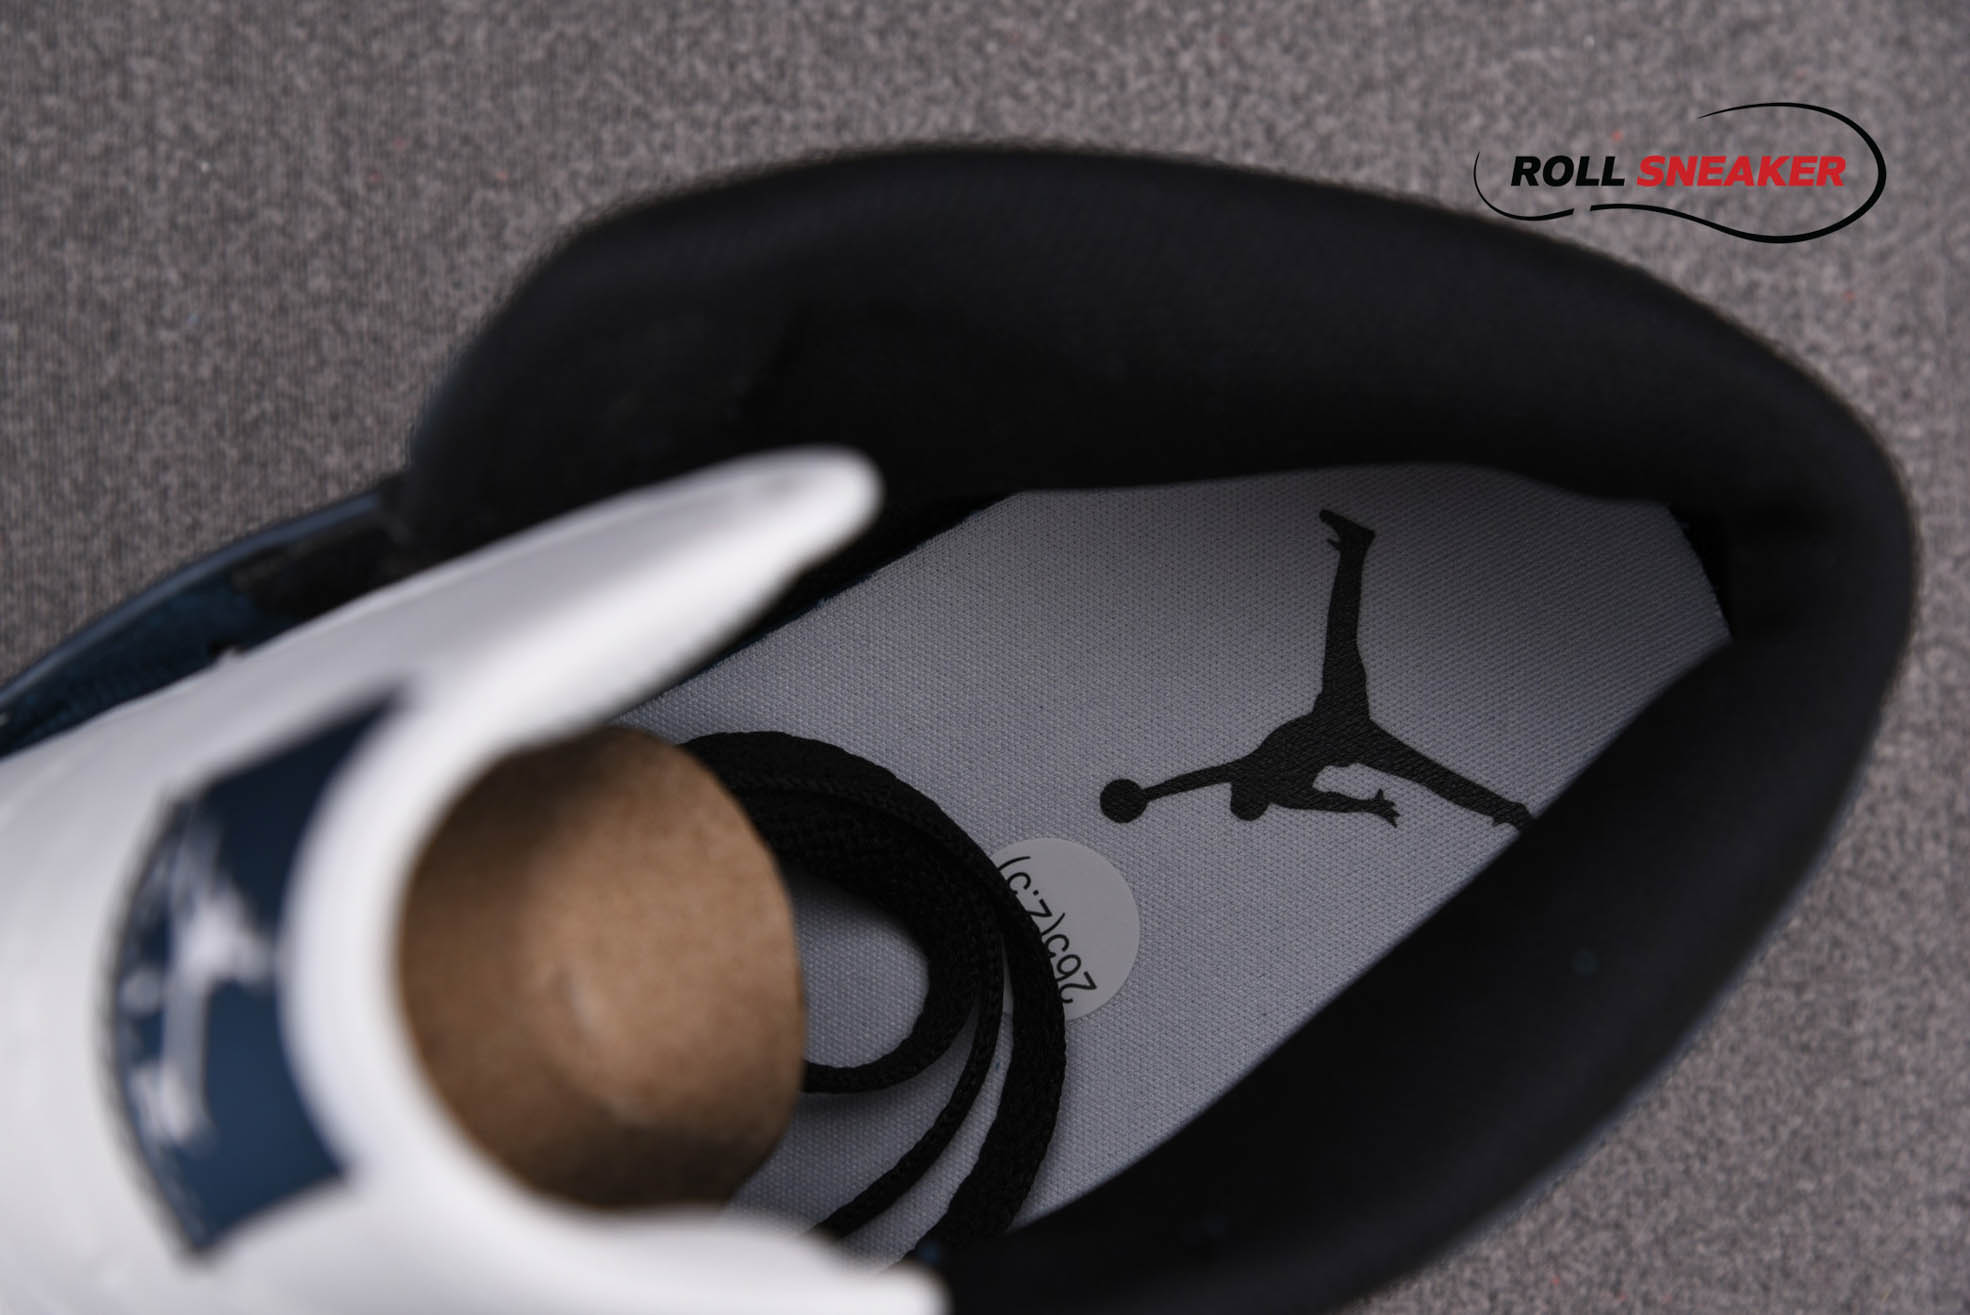 Nike Air Jordan 1 Mid Dark Teal
